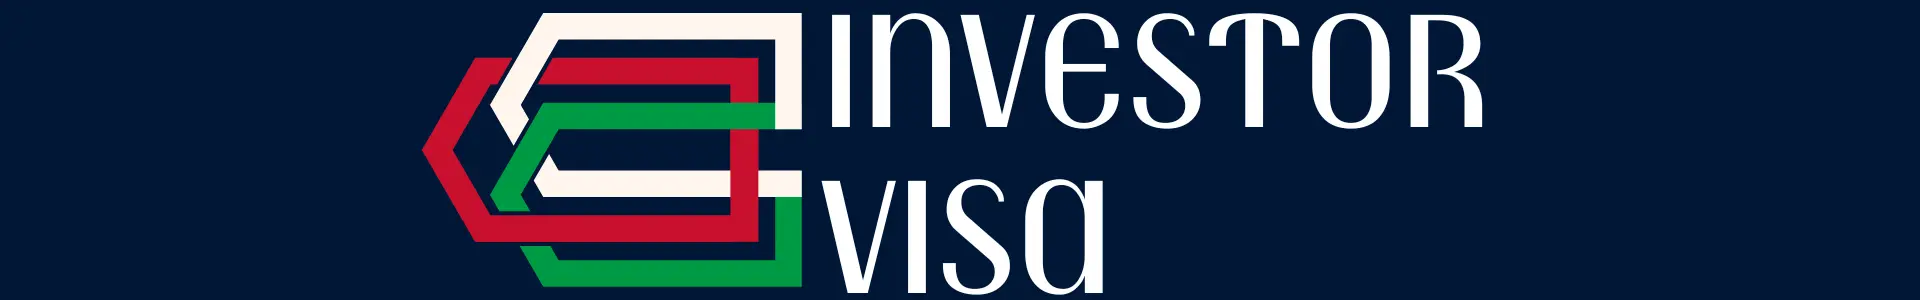 investor visa Oman